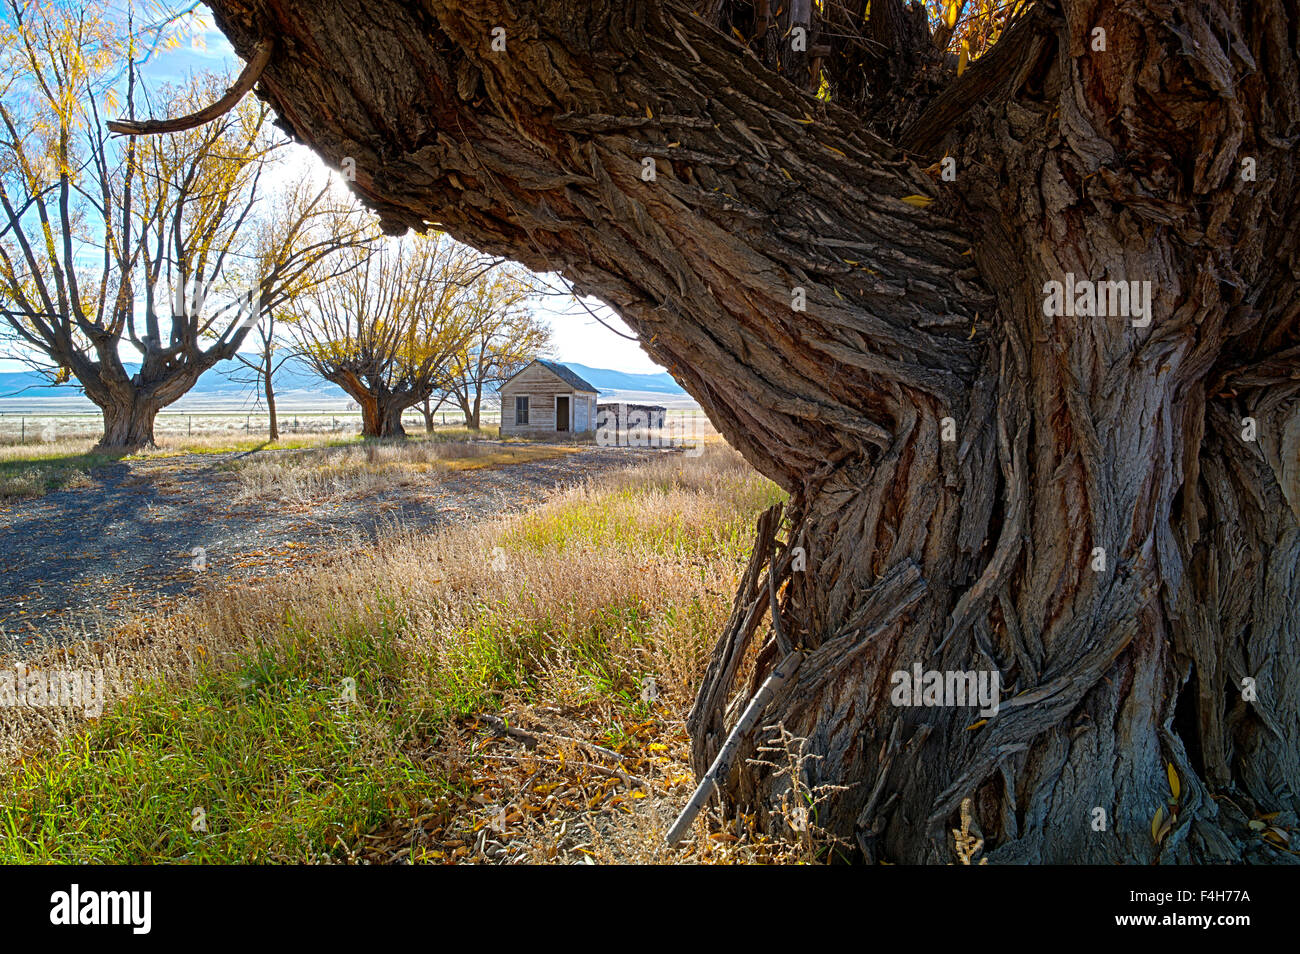 Fremont's pioppi neri americani gli alberi su ranch abbandonati, Monte Vista National Wildlife Refuge, Central Colorado, STATI UNITI D'AMERICA Foto Stock